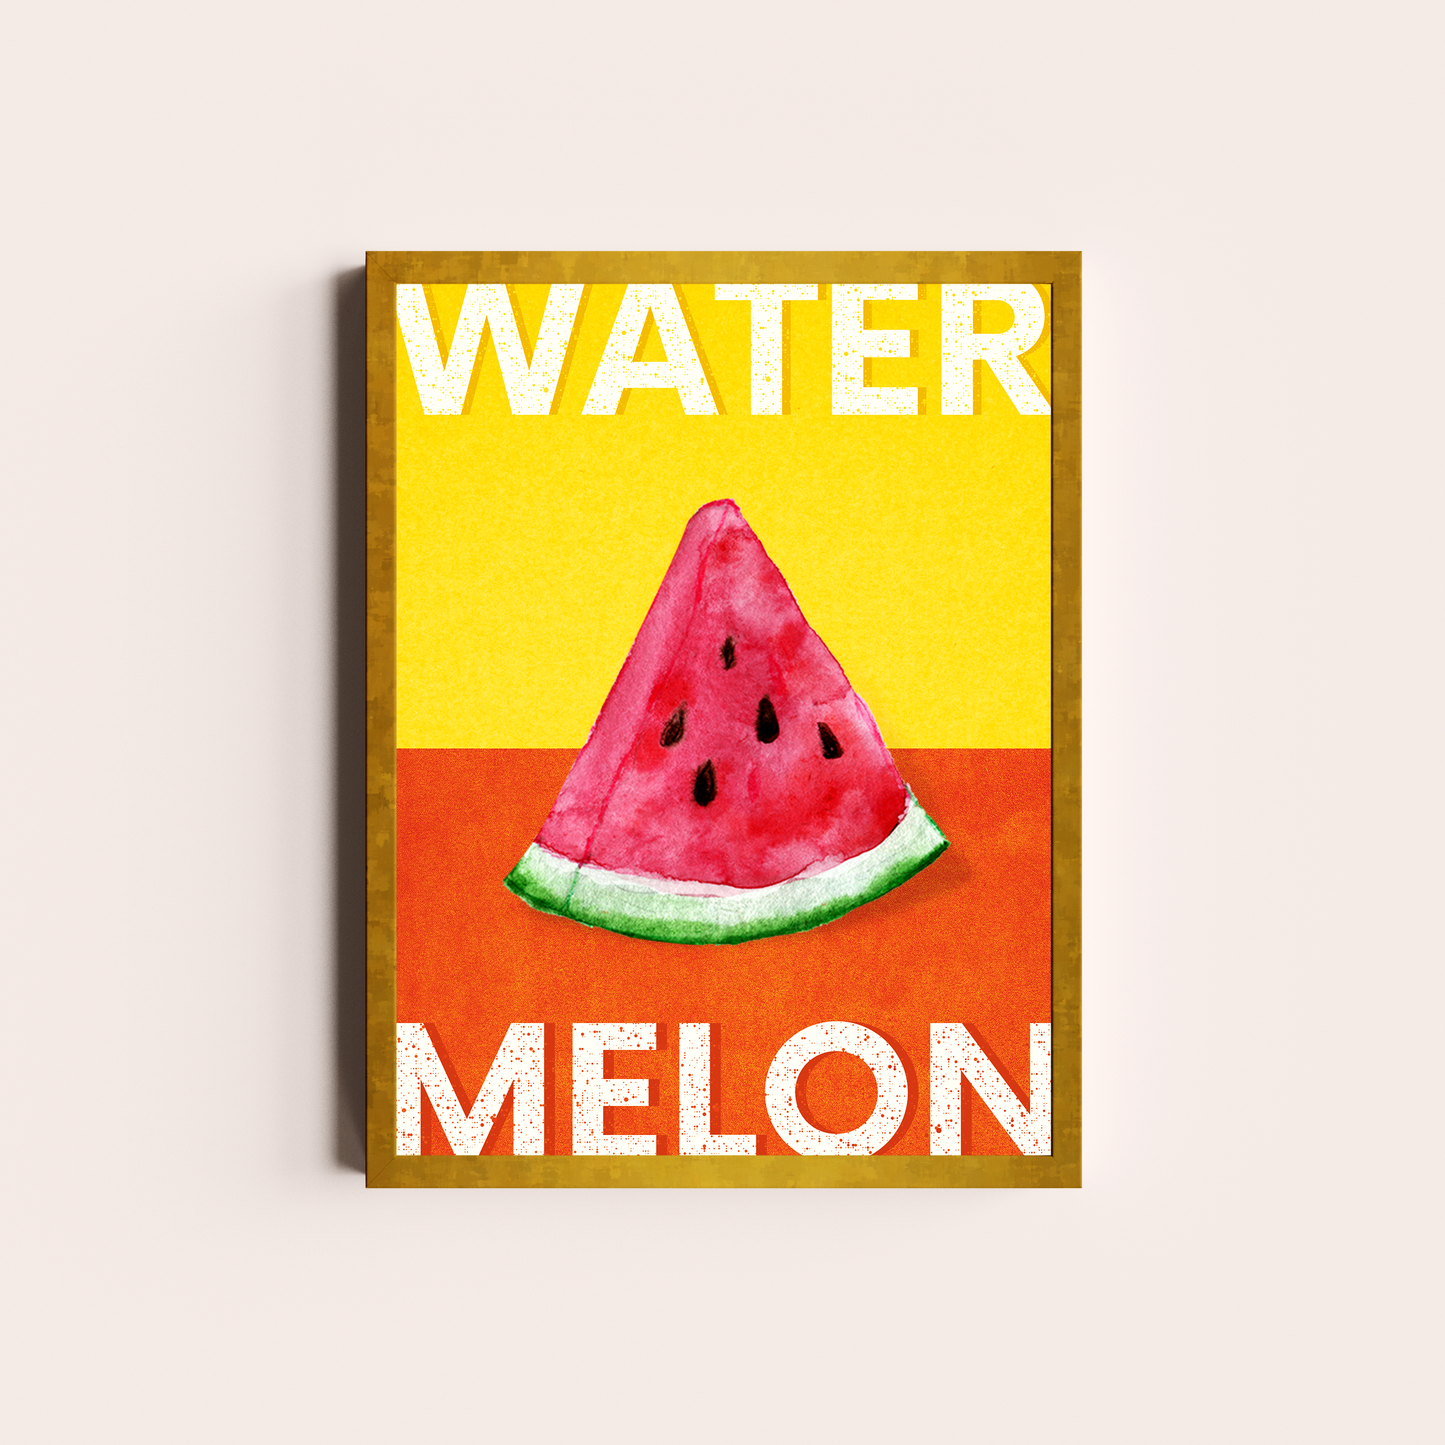 Watermelon Sugar AH!